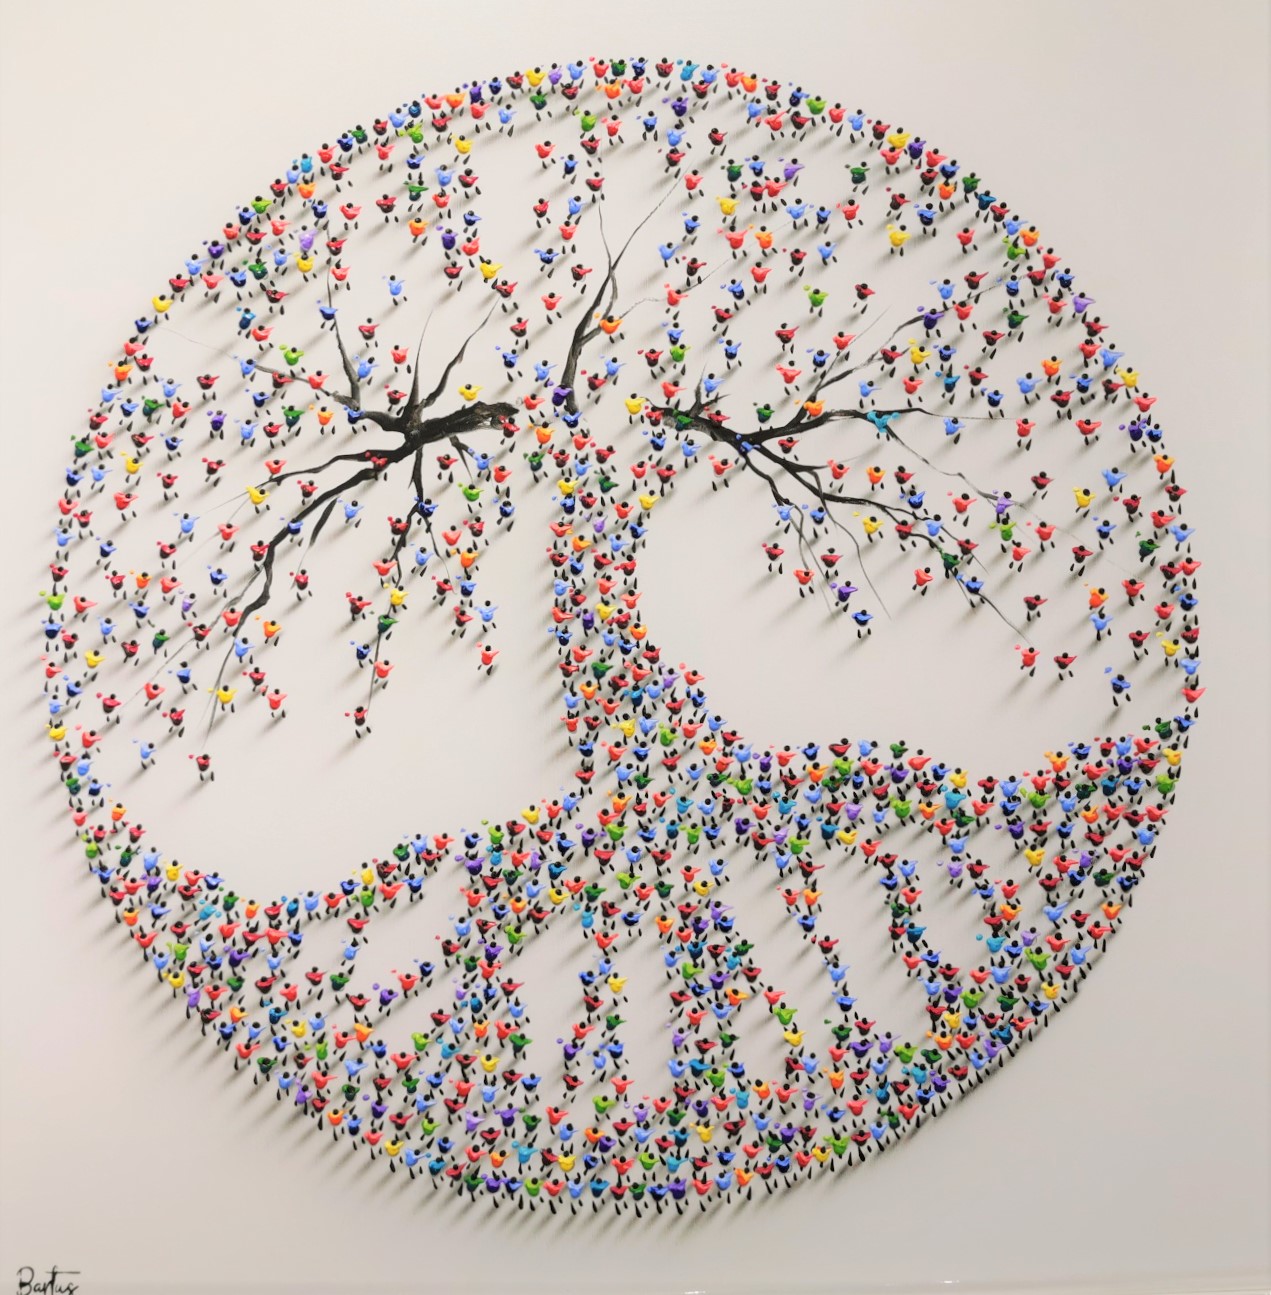 Tree of Life V by Francisco Bartus